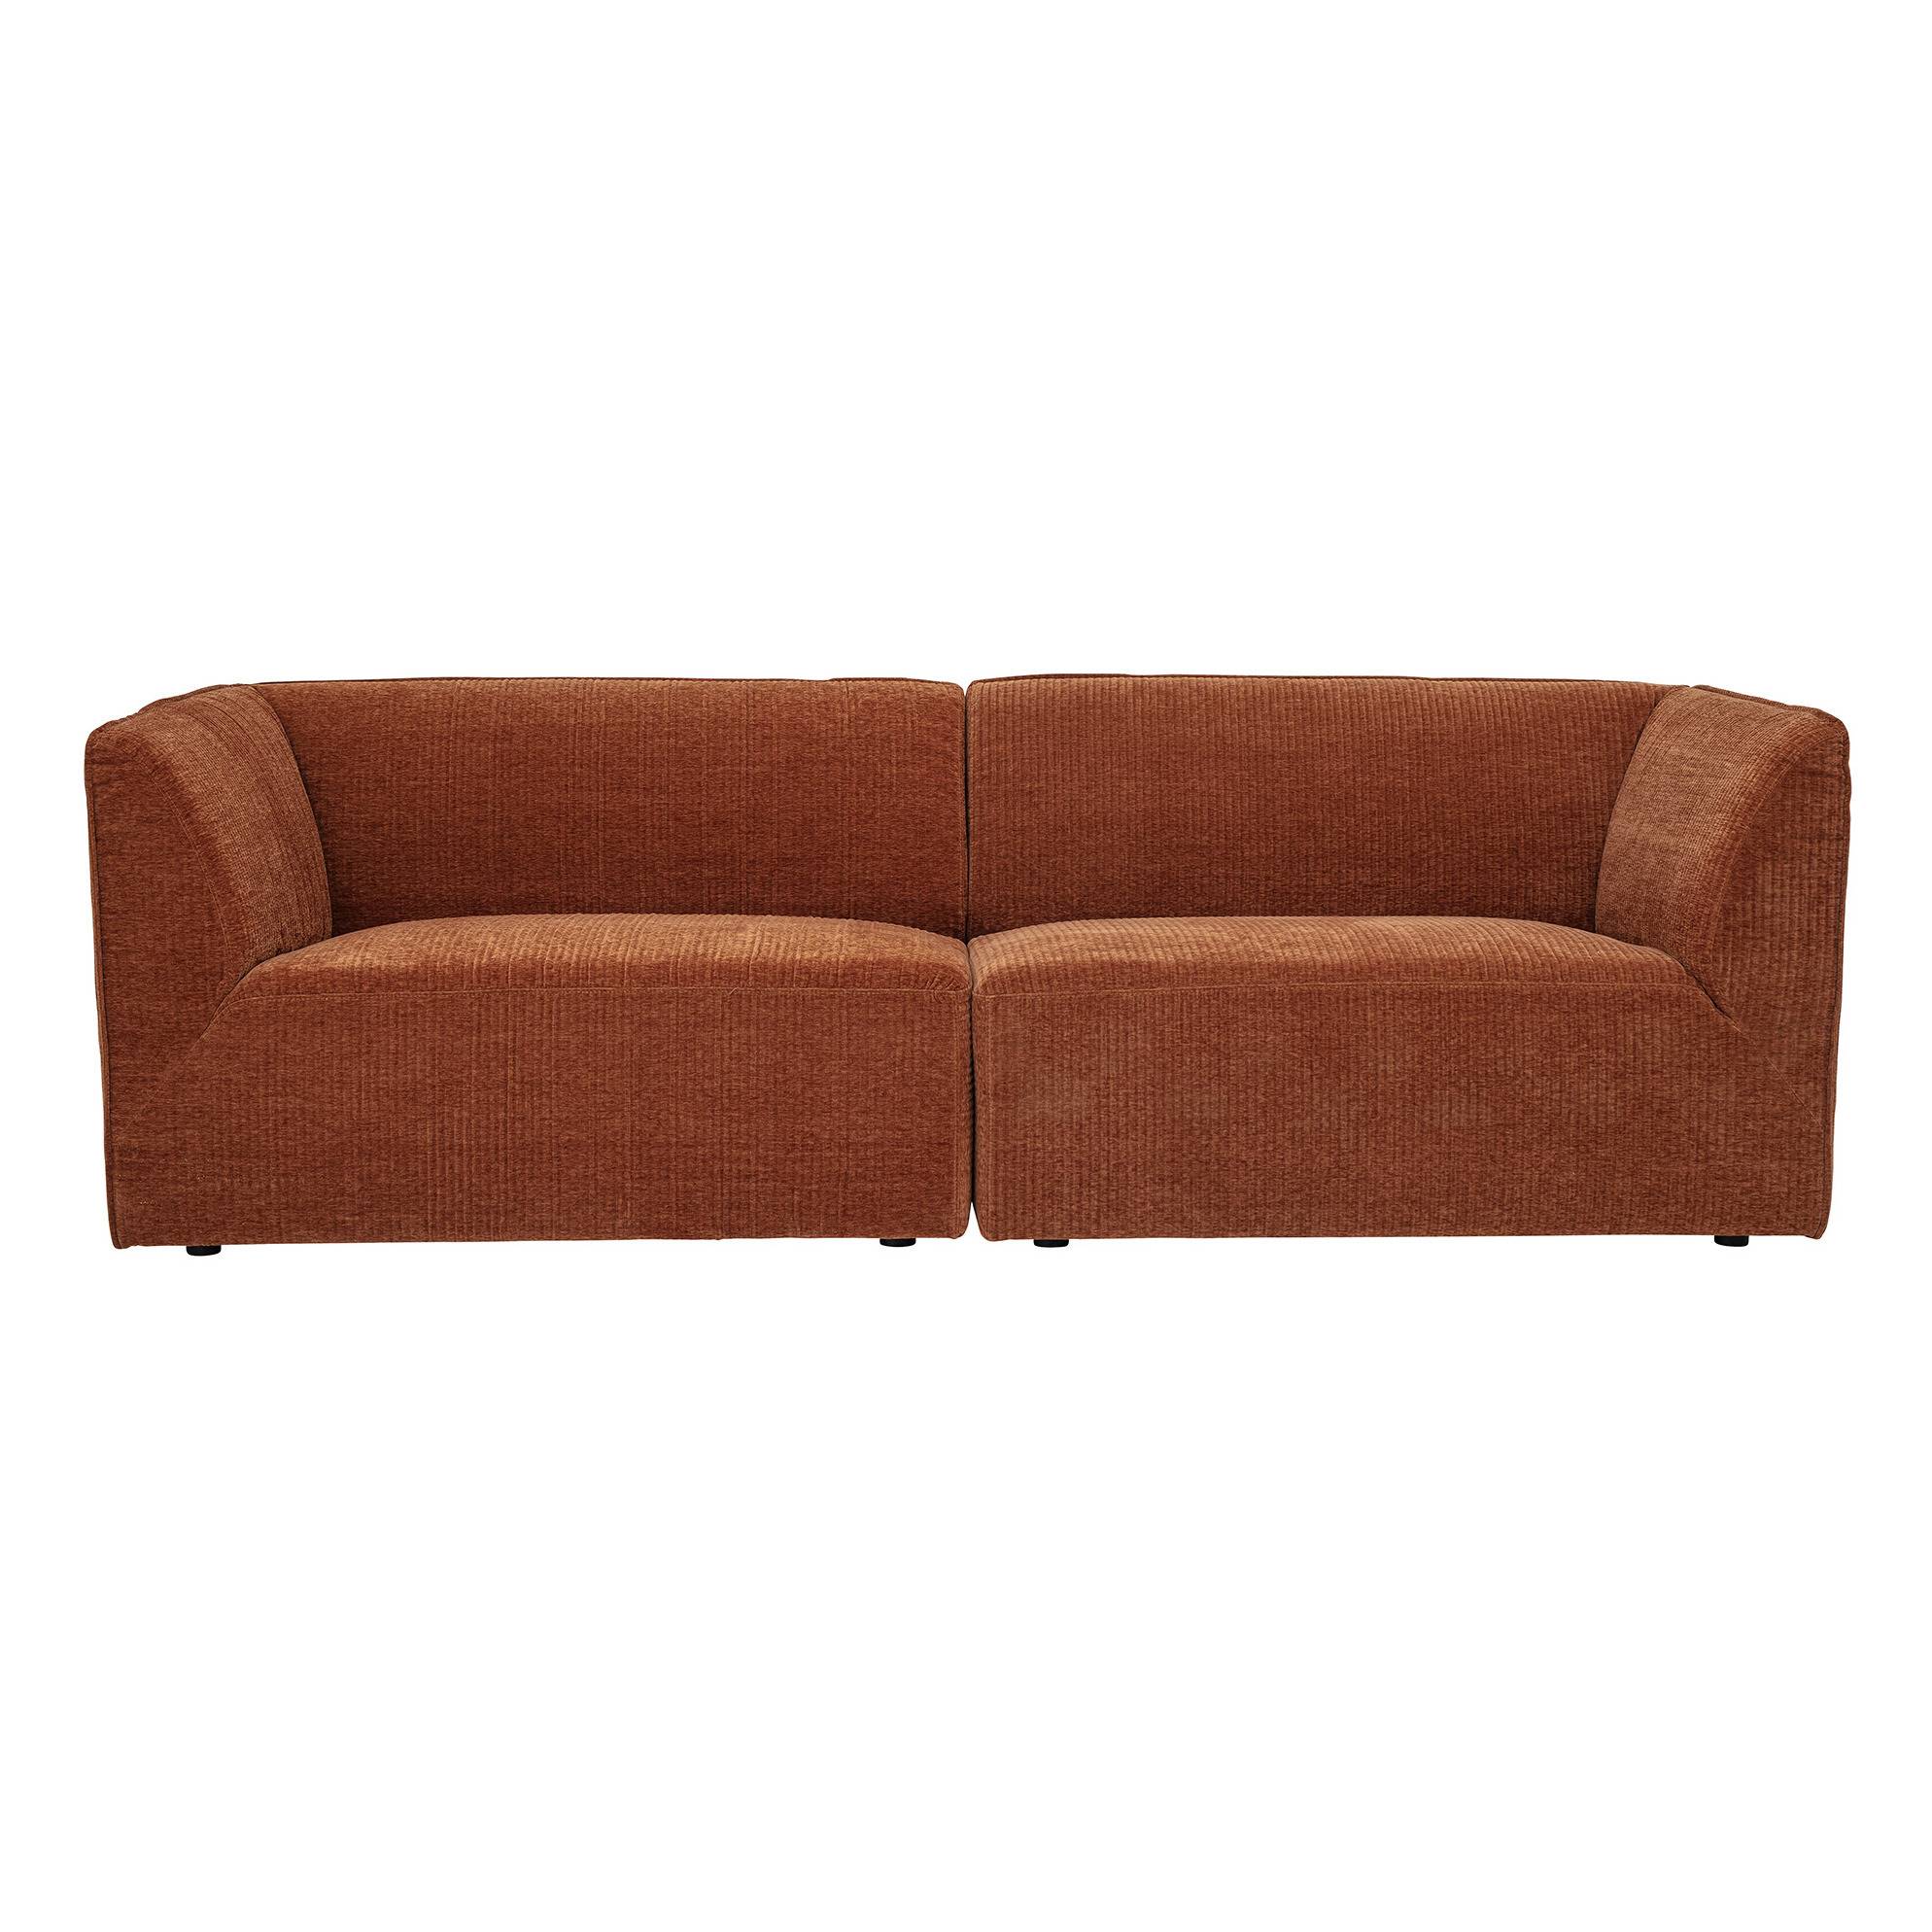 sofa-petra-de-pana-3-plazas smallable